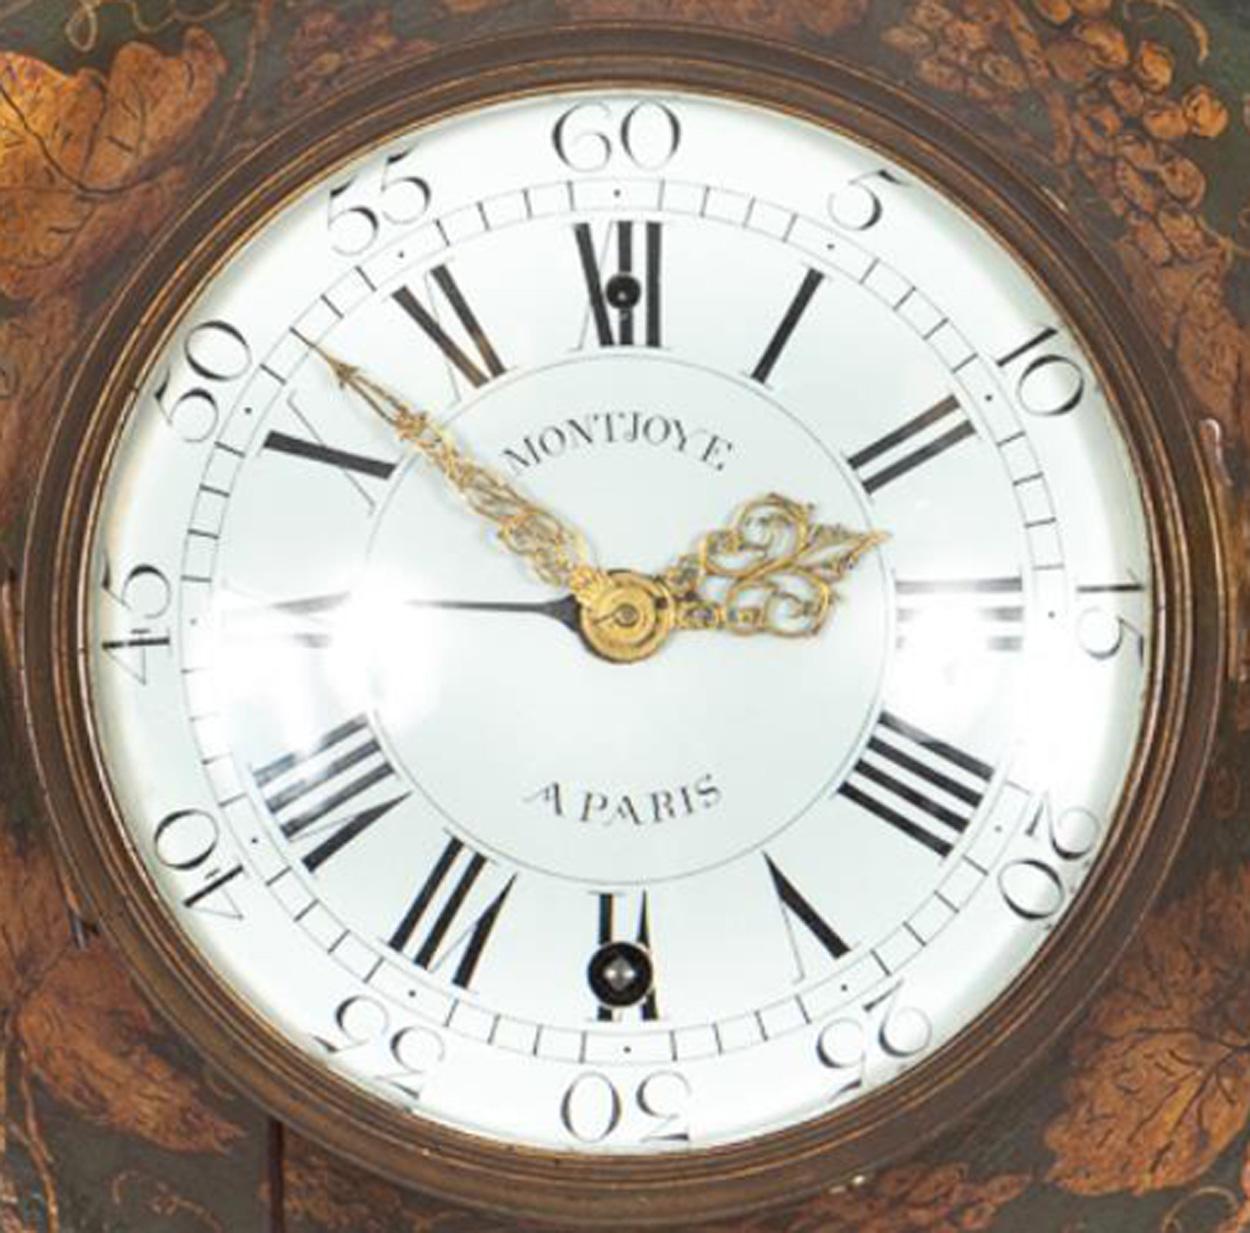 Très rare et désirable horloge murale française du XVIIIe siècle en tole verte décorée de vignes dorées, le cadran peint en blanc avec de fines aiguilles dorées en filigrane, les heures en chiffres romains et un cadran extérieur pour les minutes,